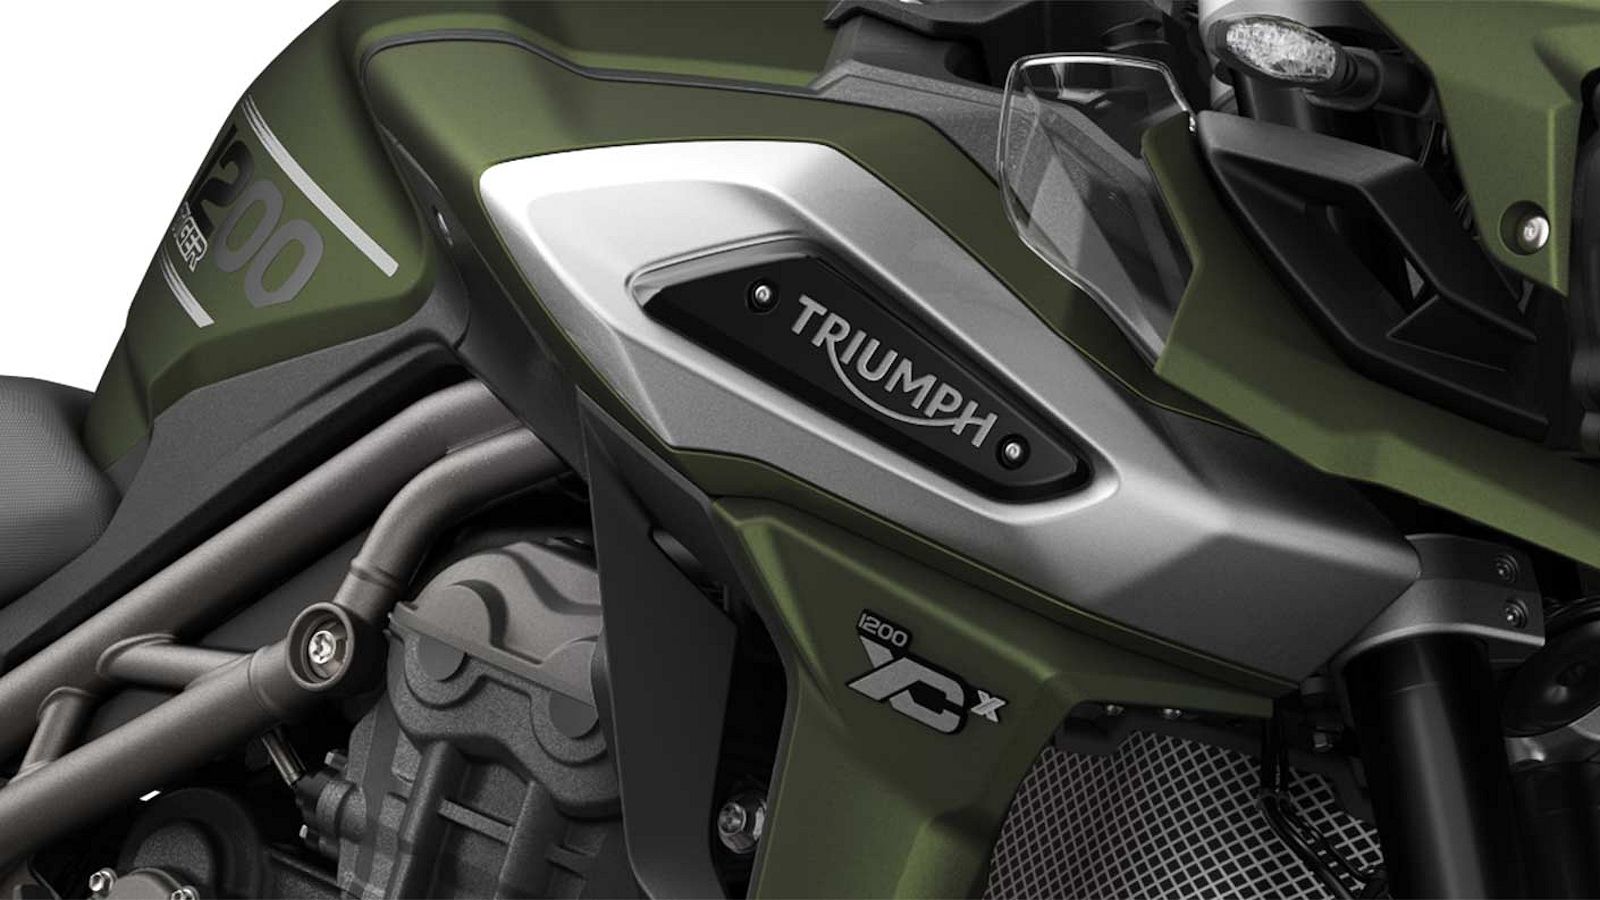 2018 - 2019 Triumph Tiger 1200 XCx